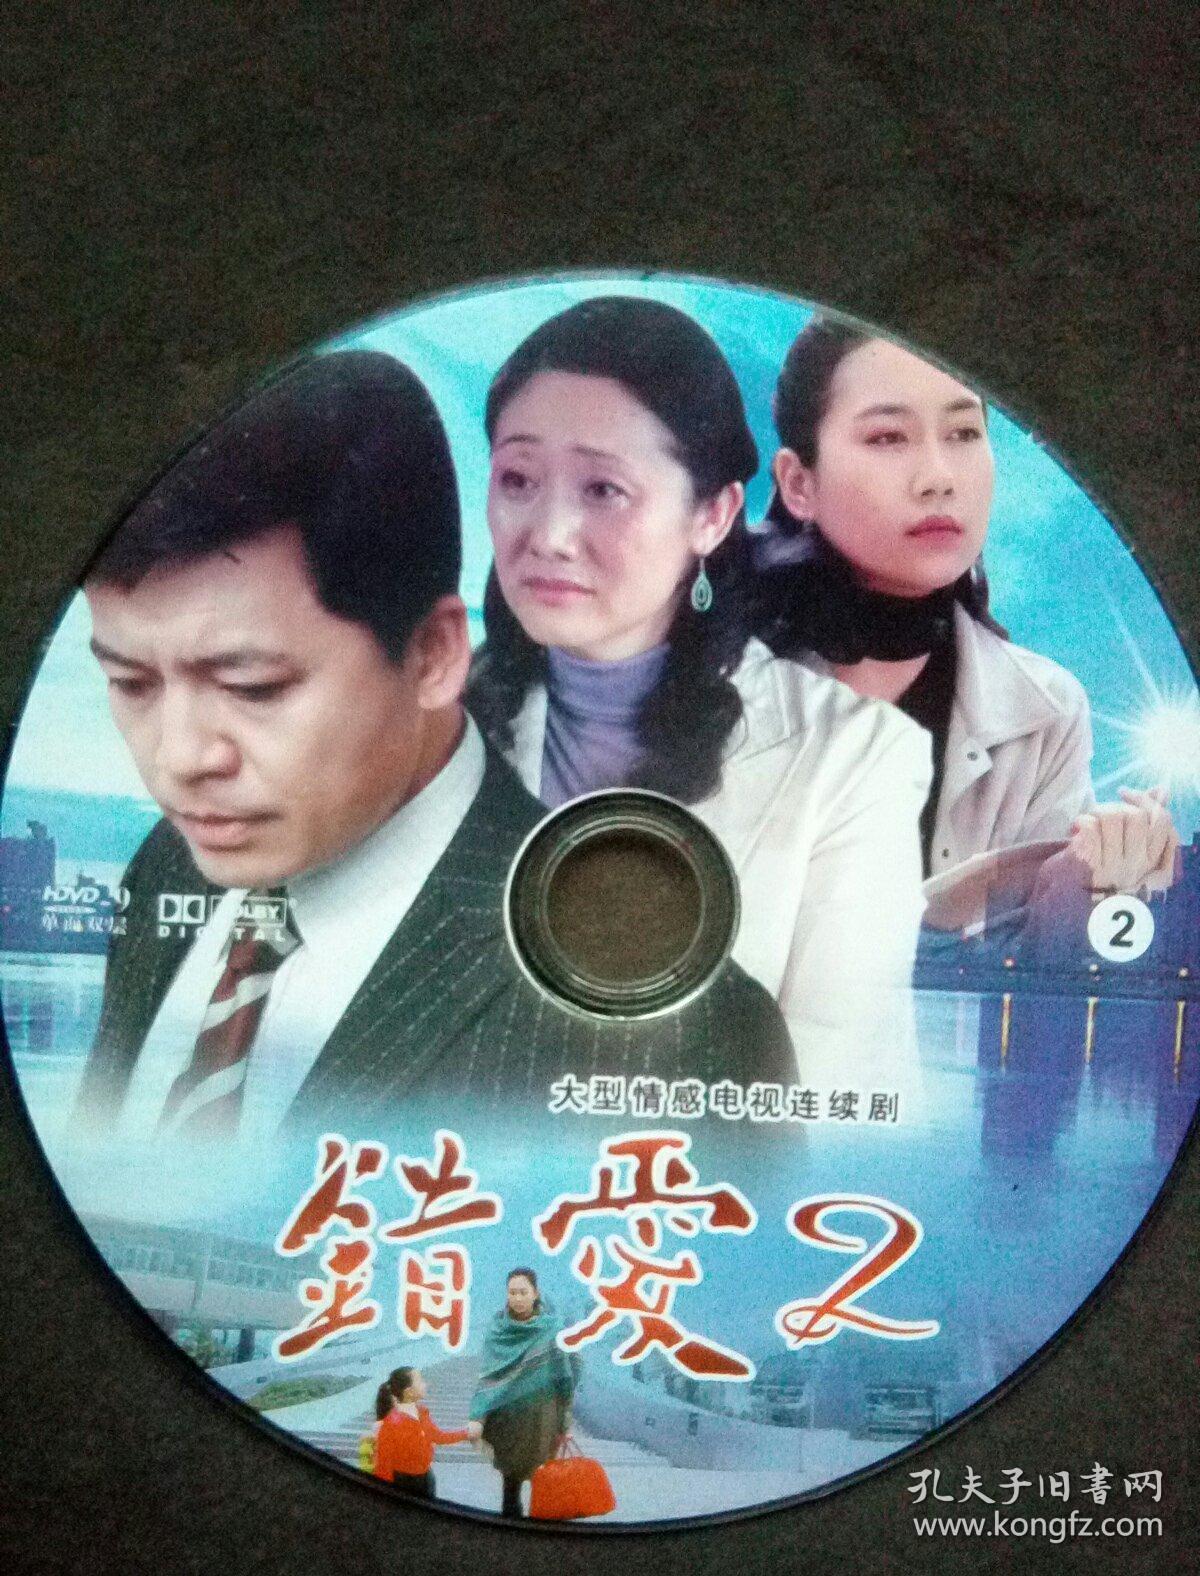 大型情感电视连续剧《错爱》二.hdvd-9